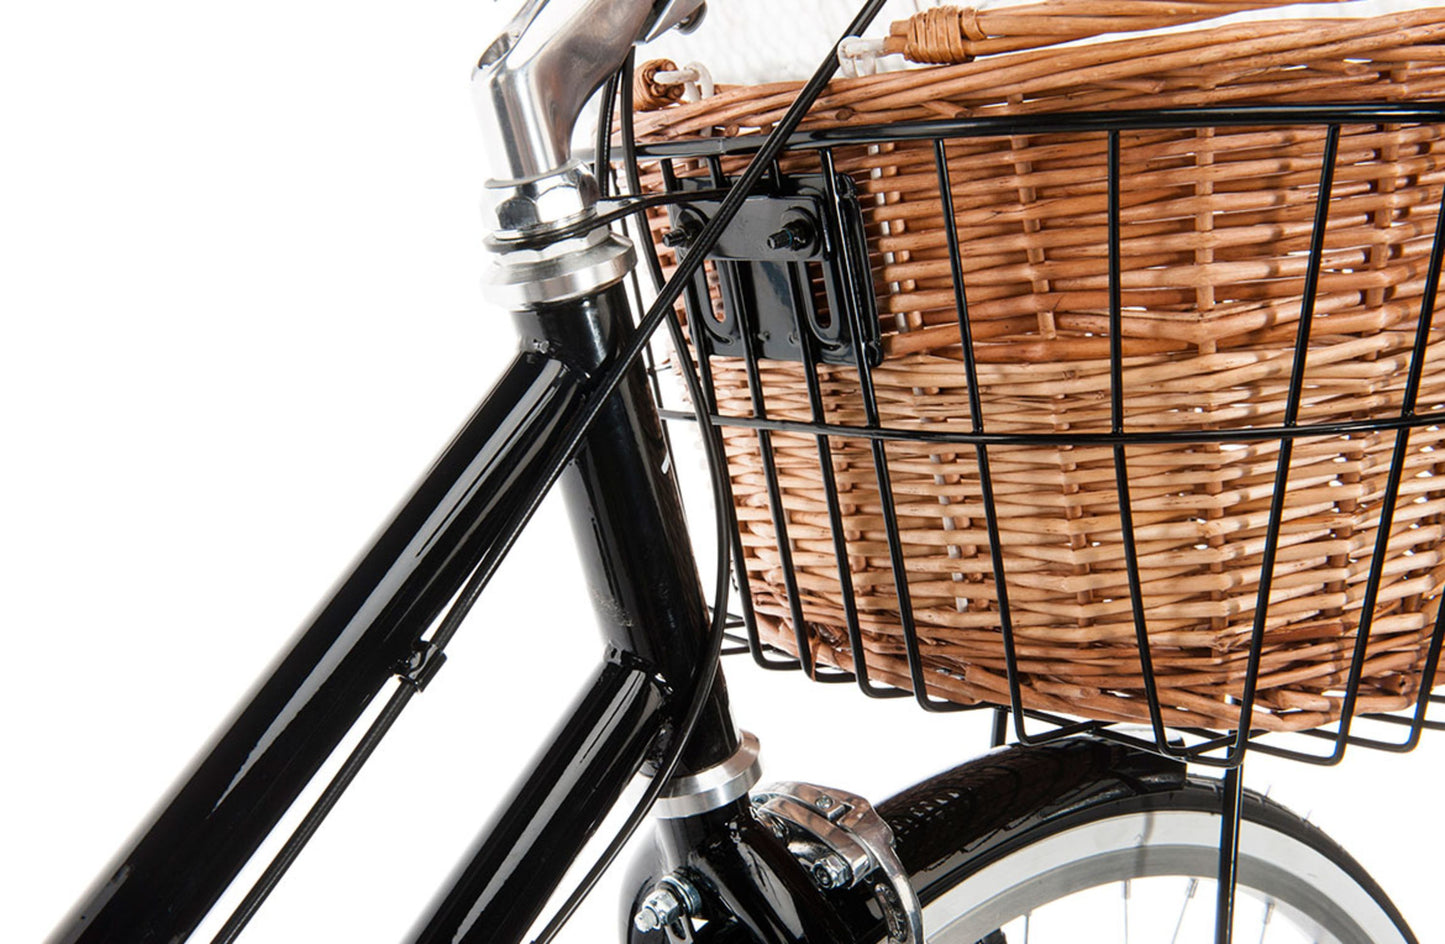 Ladies Classic Plus Vintage Bike in Black showing metal black basket with wicker basket on inside from Reid Cycles Australia